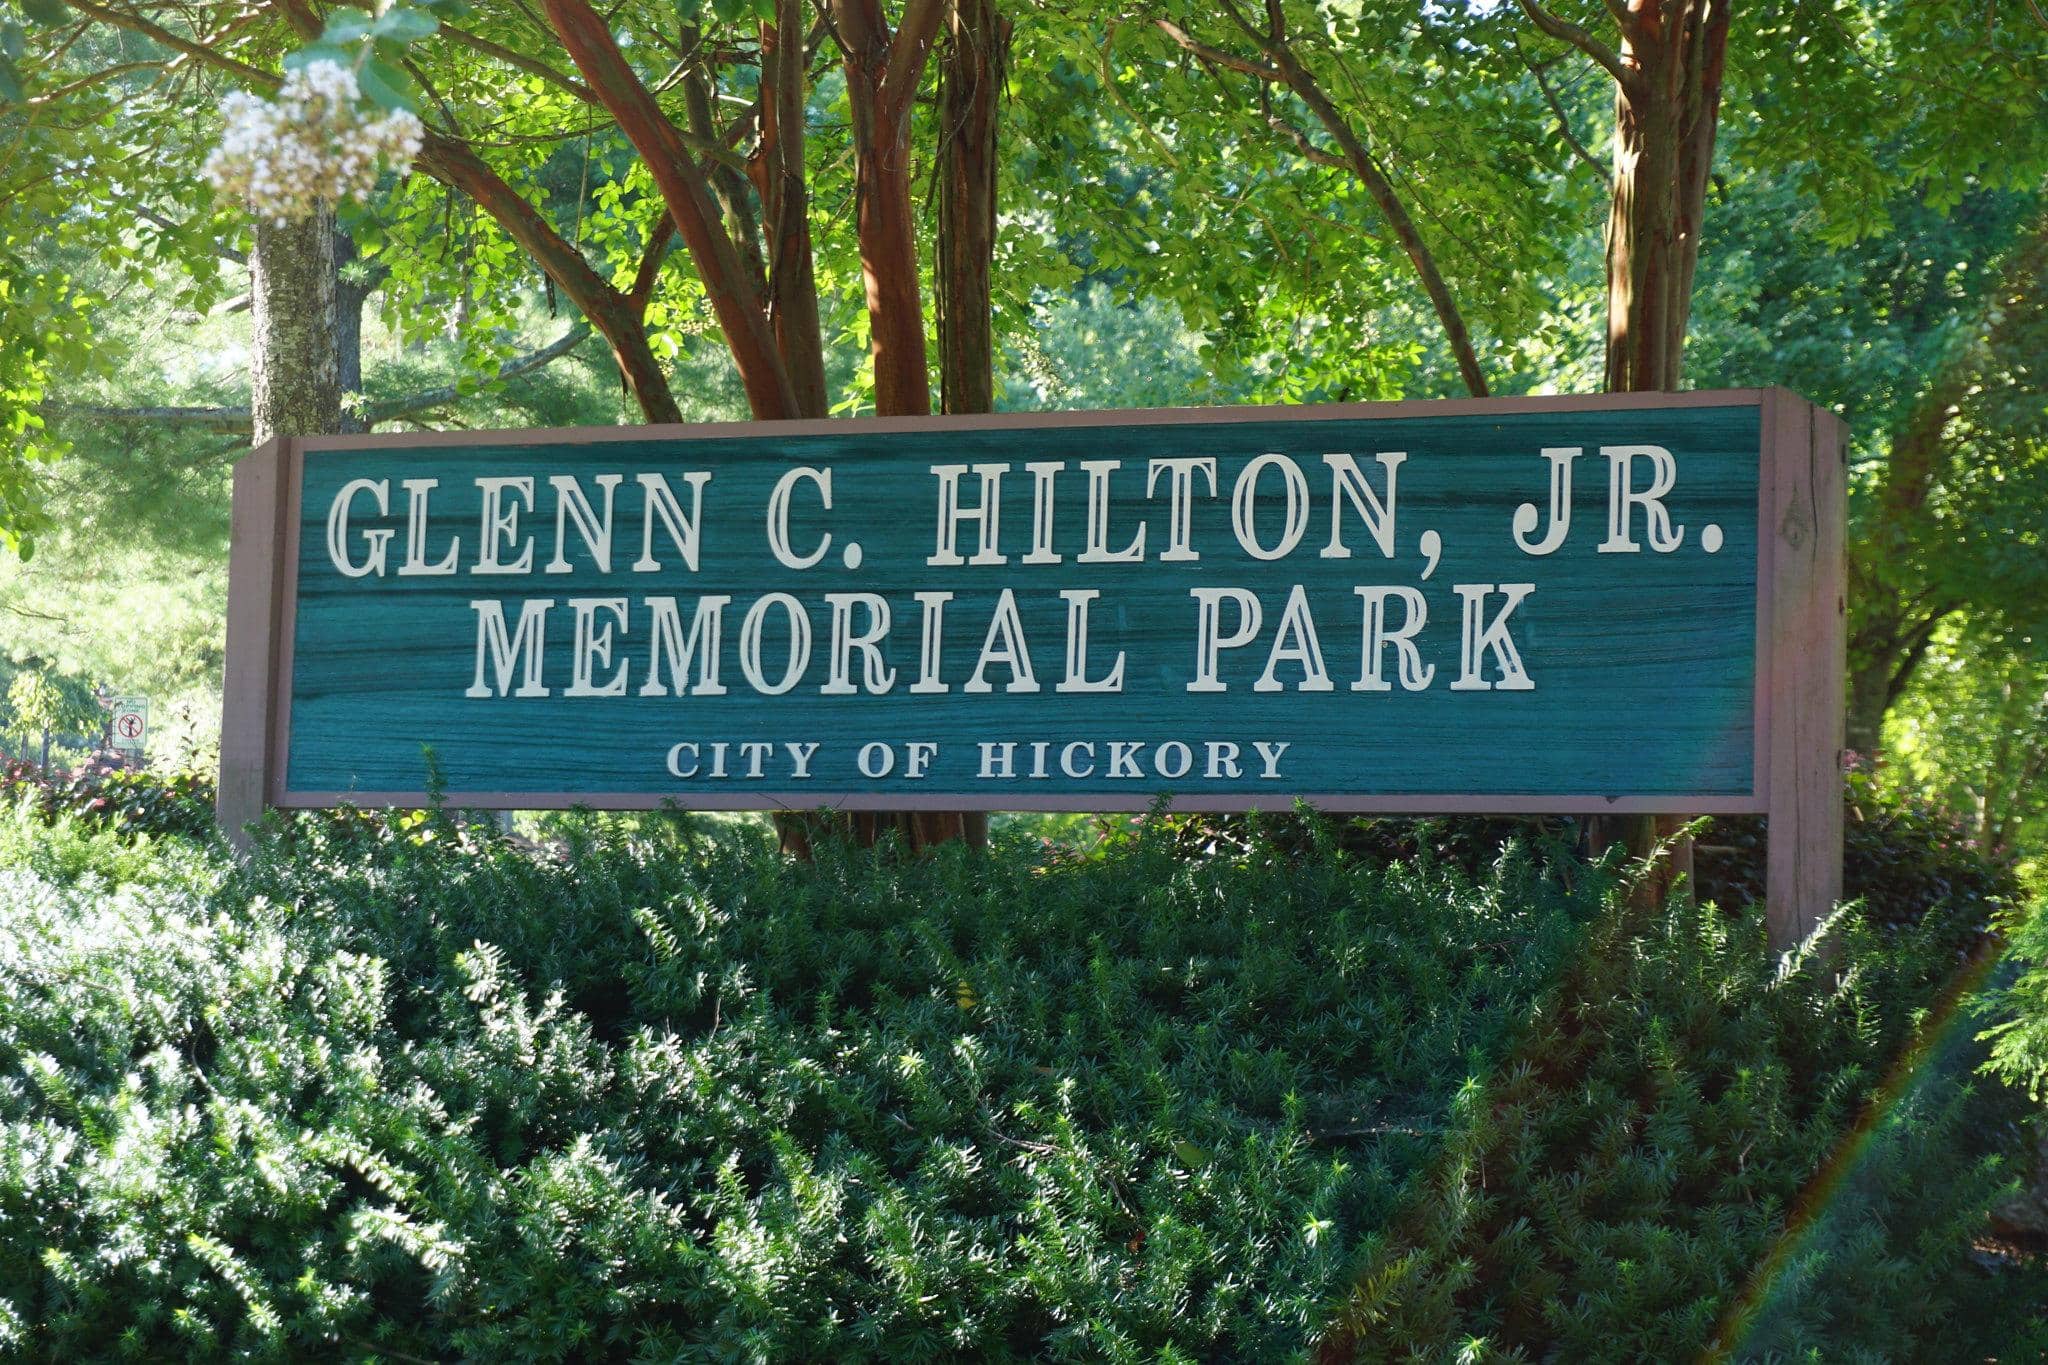 Glenn C. Hilton, Jr. Memorial Park